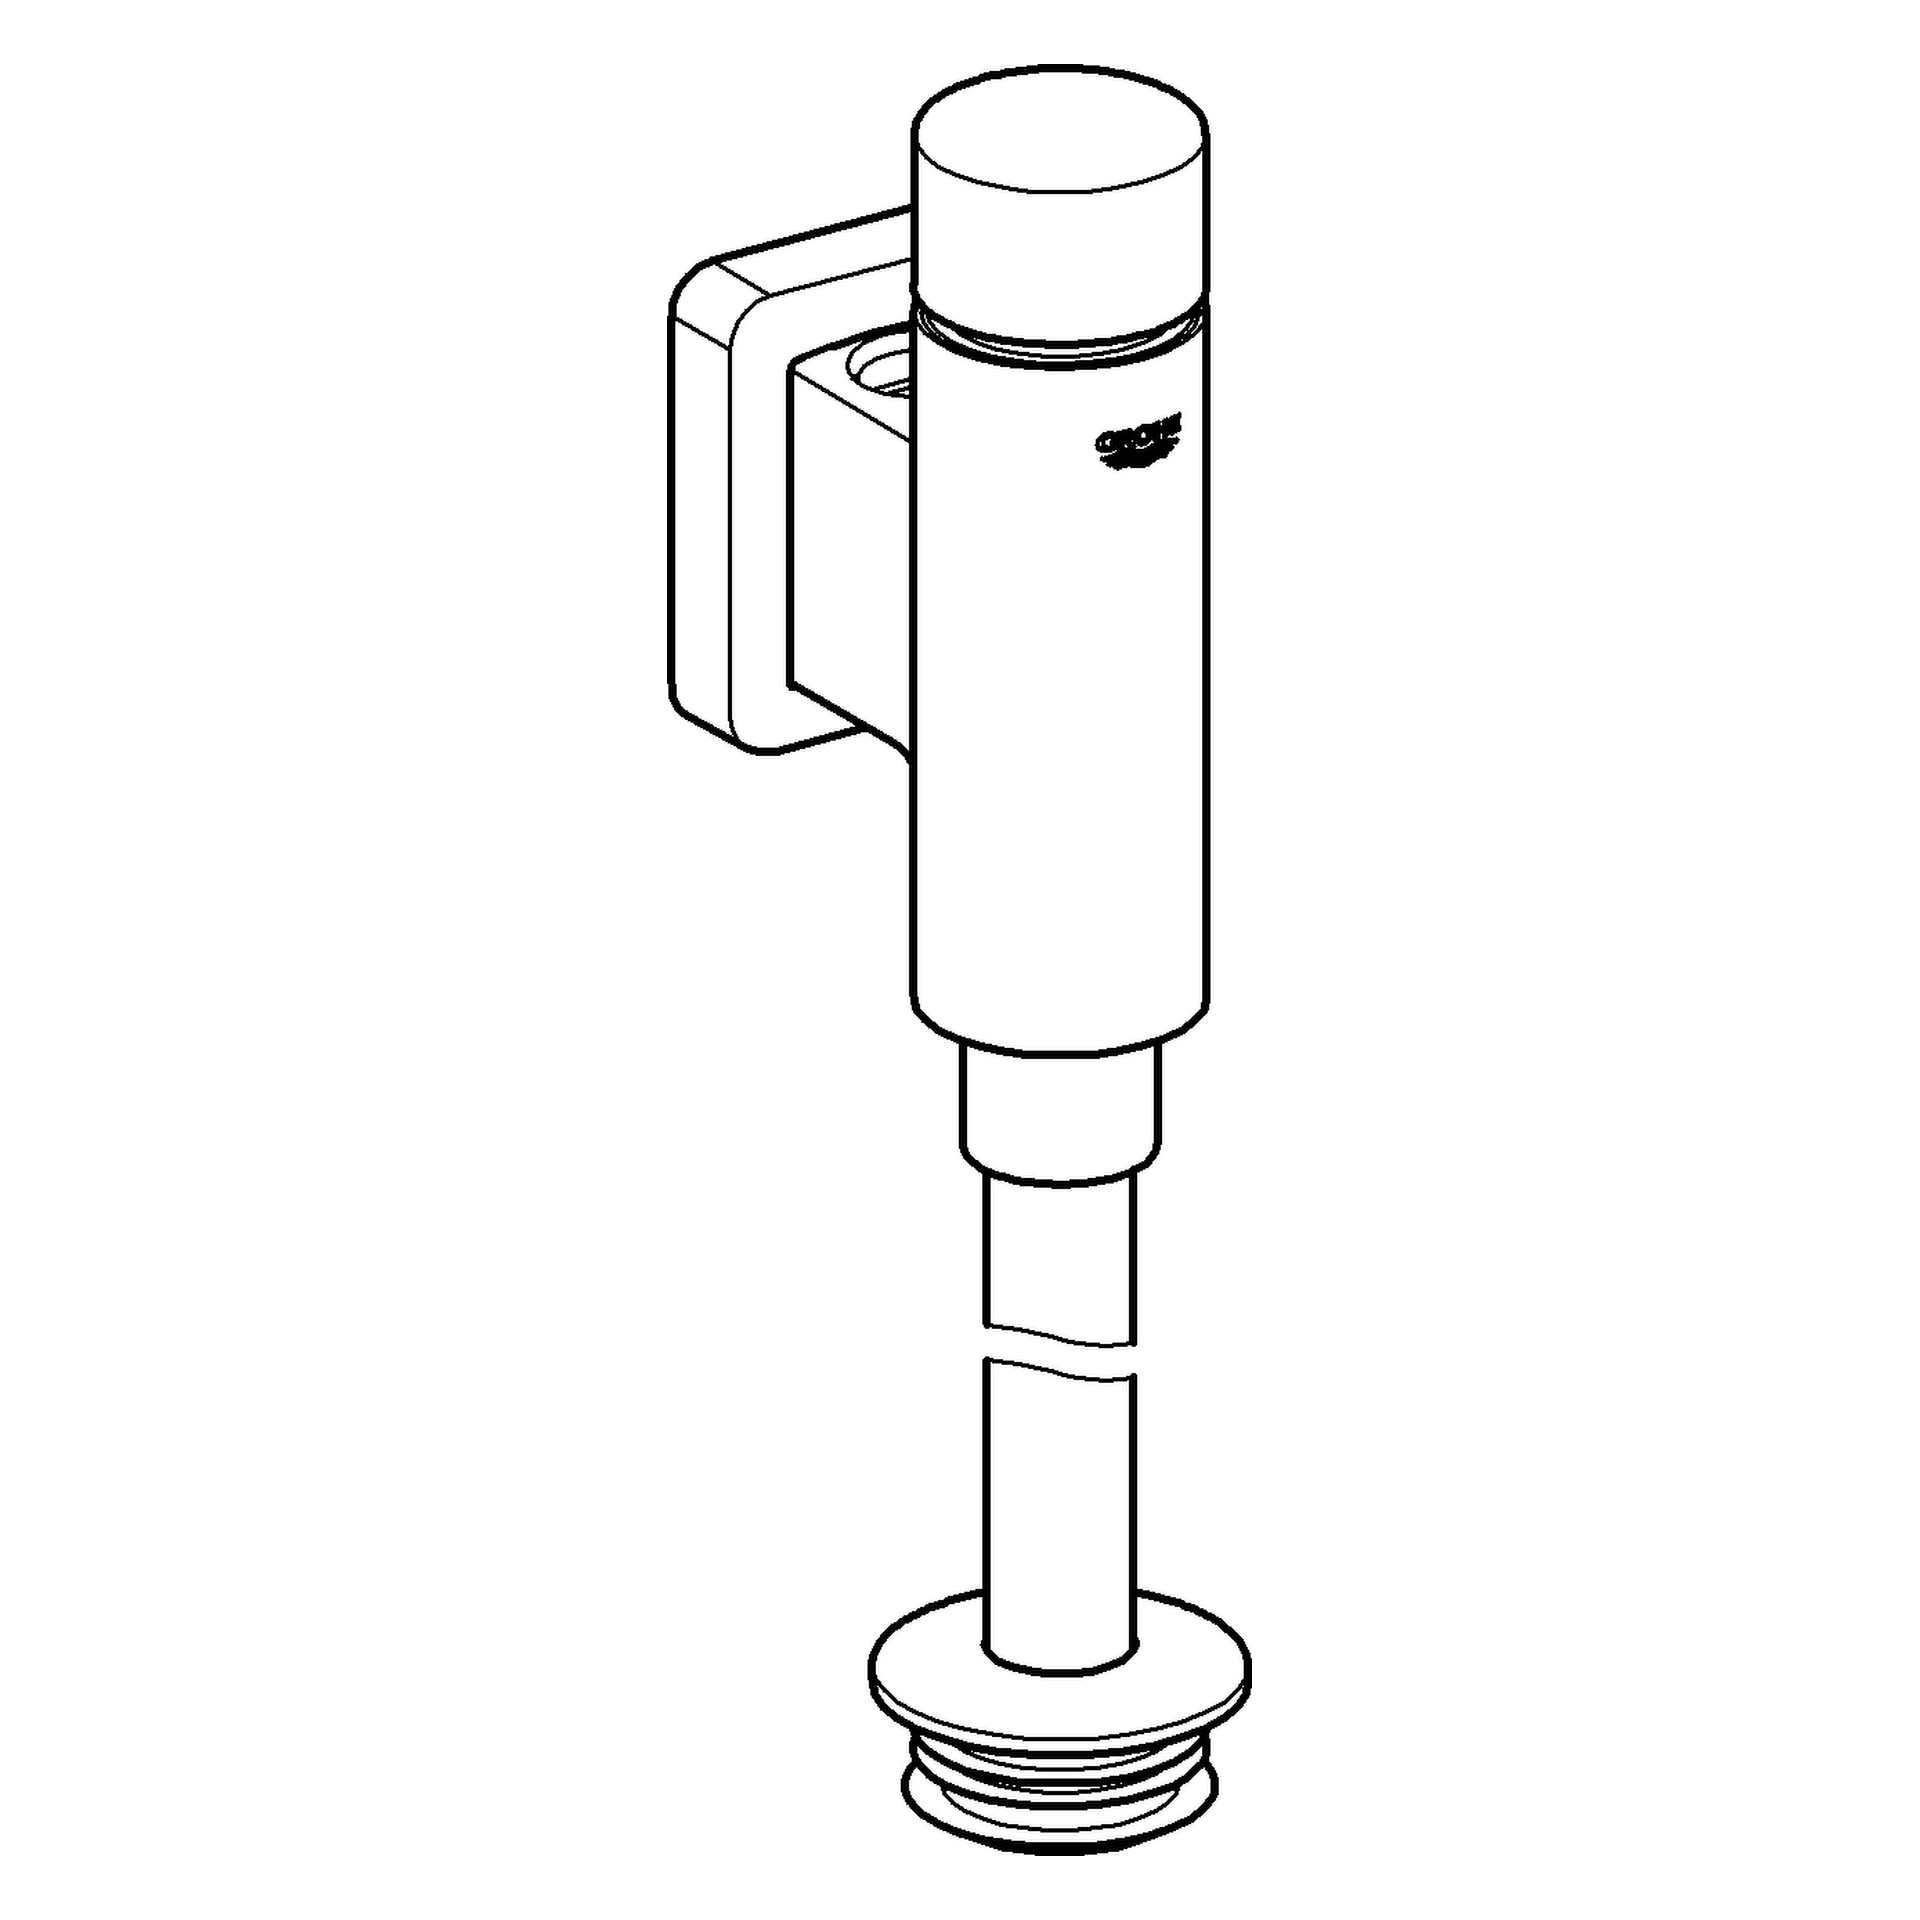 Urinal-Druckspüler Rondo 37339, DN 15, integrierte Vorabsperrung, chrom